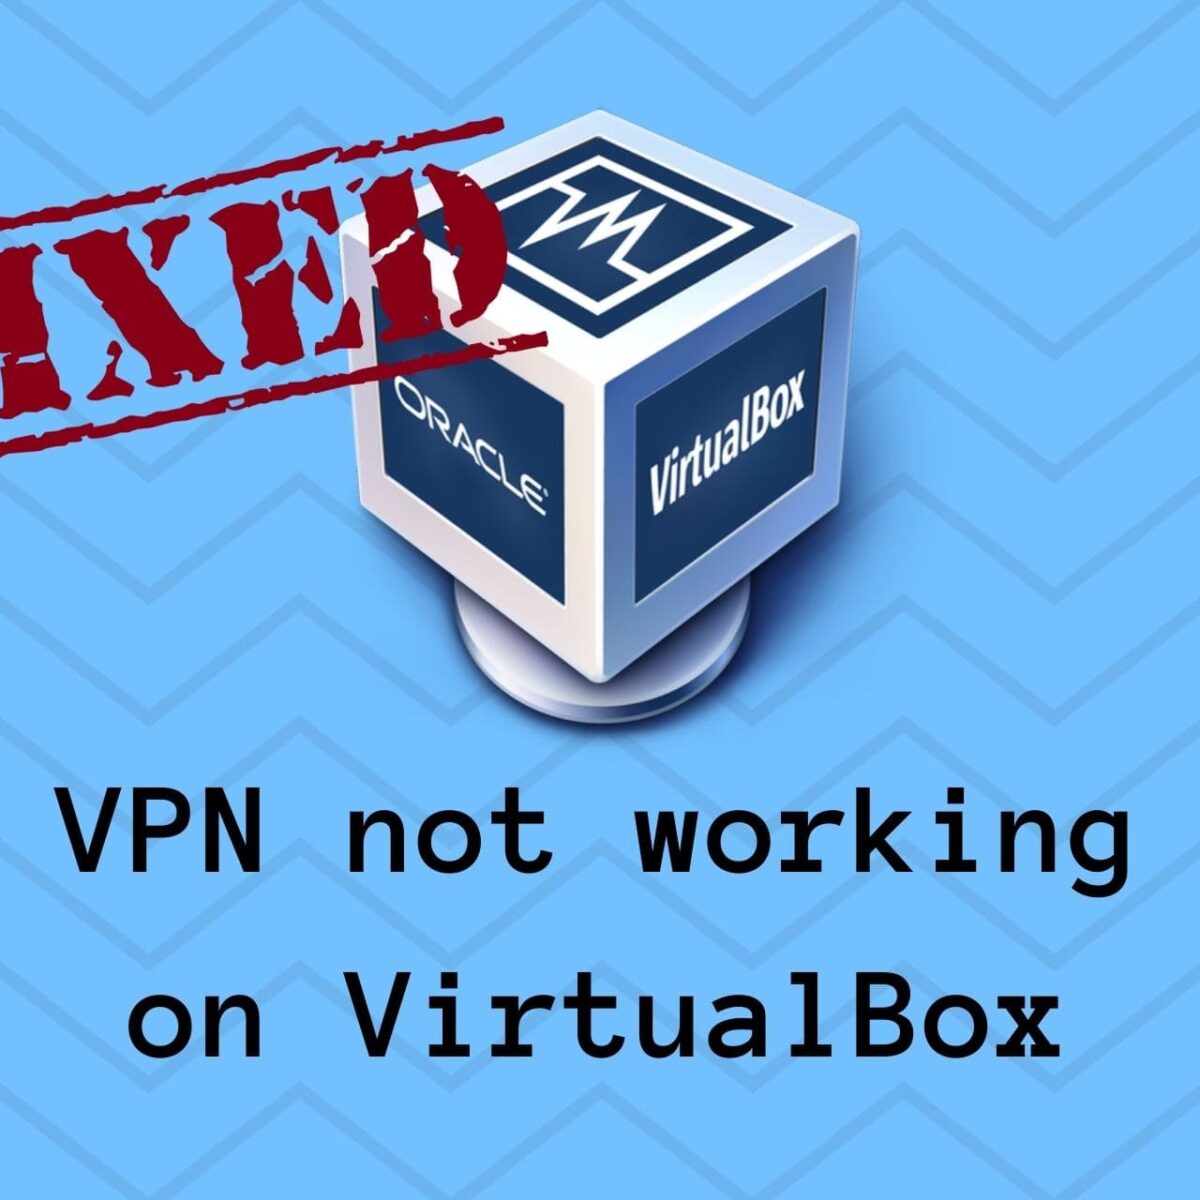 ¿Virtualbox es una VPN?